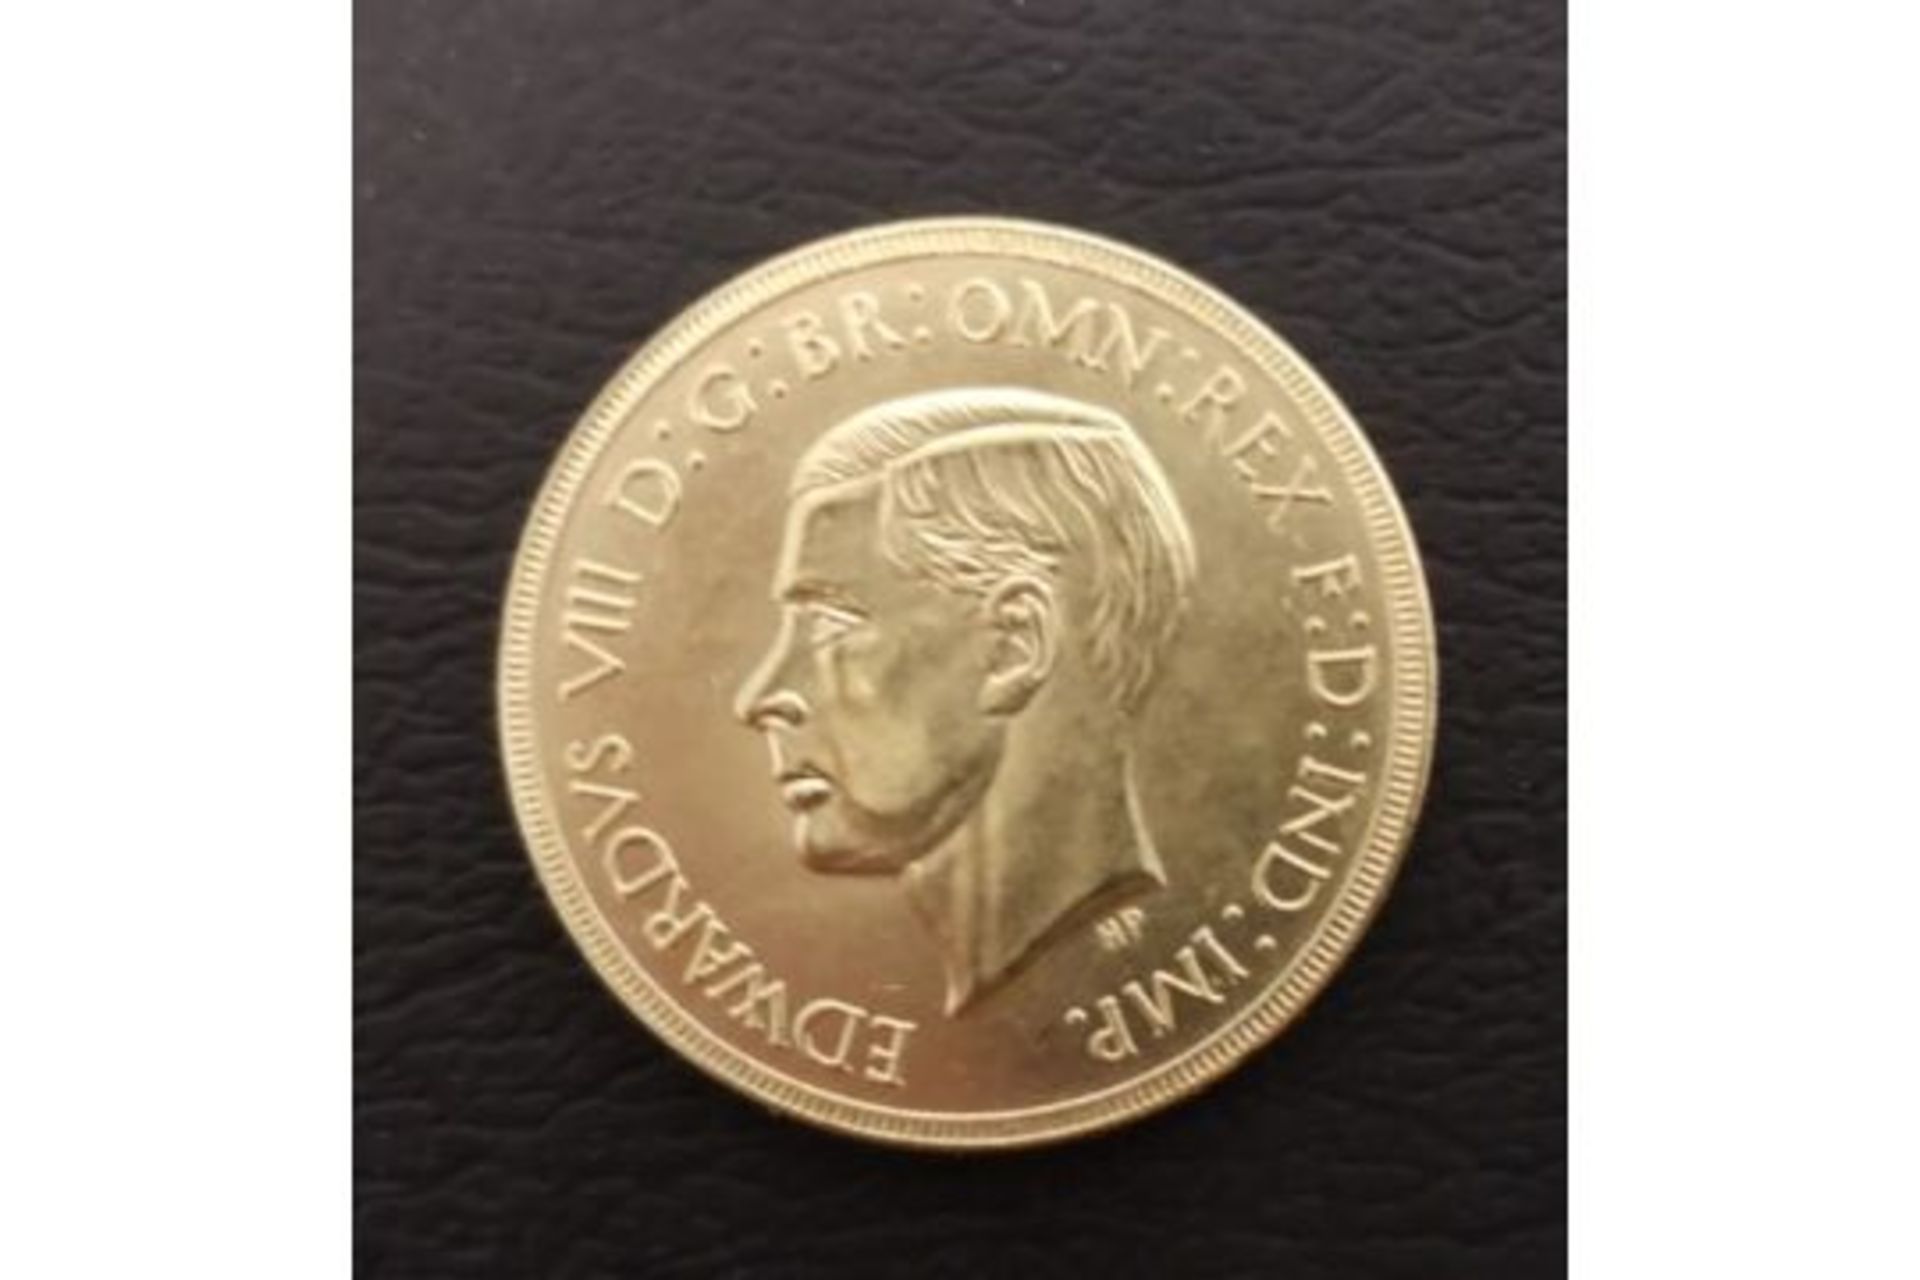 edward coin